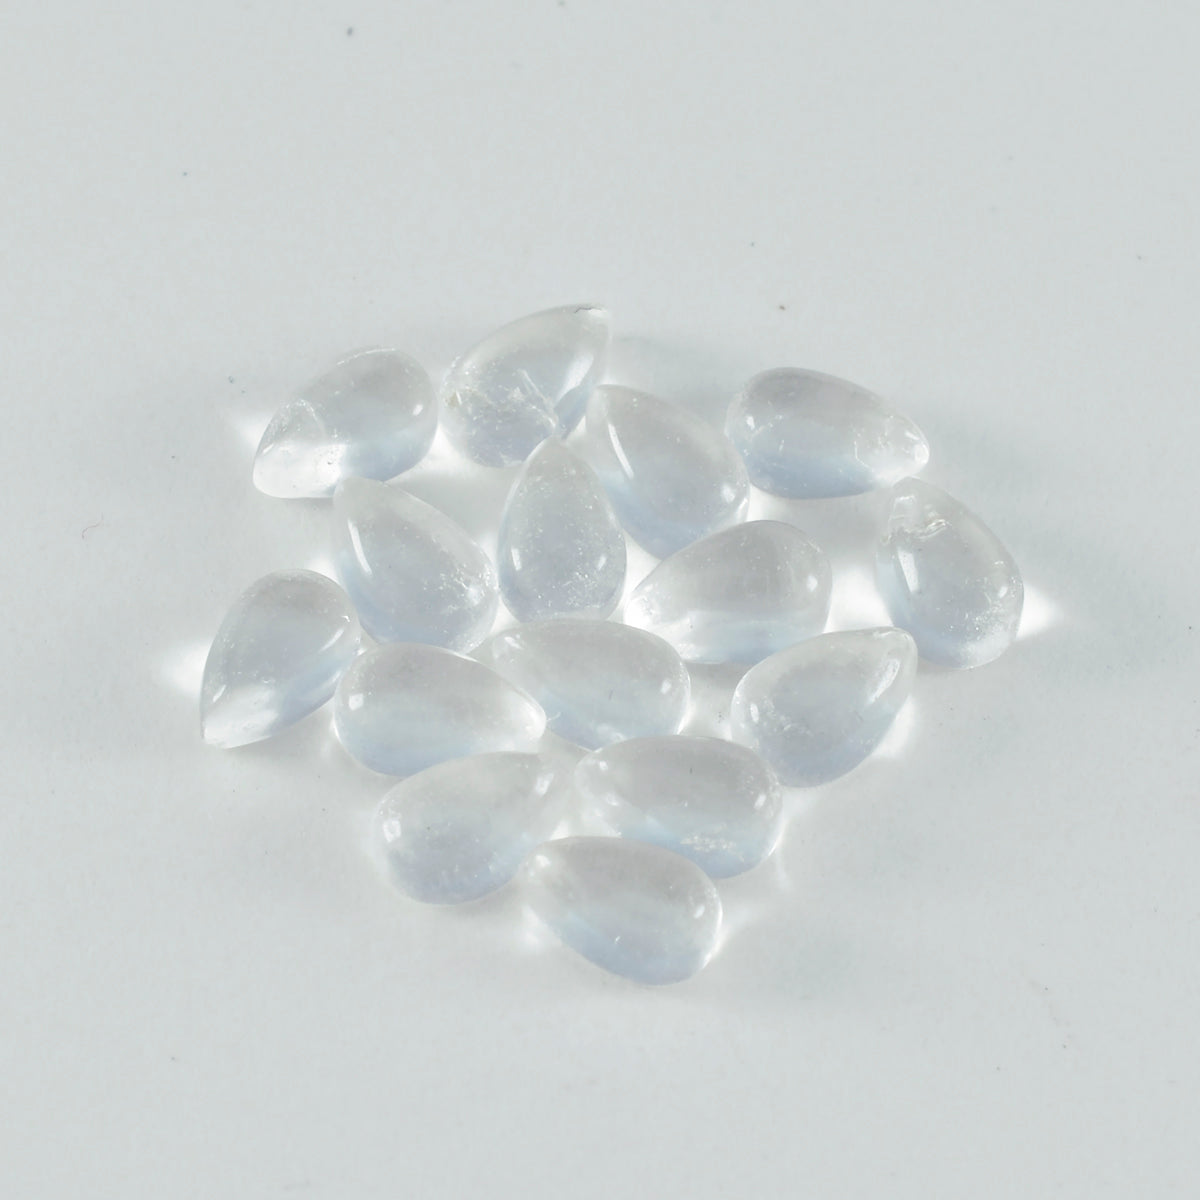 Riyogems 1 pieza cabujón de cuarzo de cristal blanco 5x7 mm forma de pera piedra preciosa suelta de excelente calidad